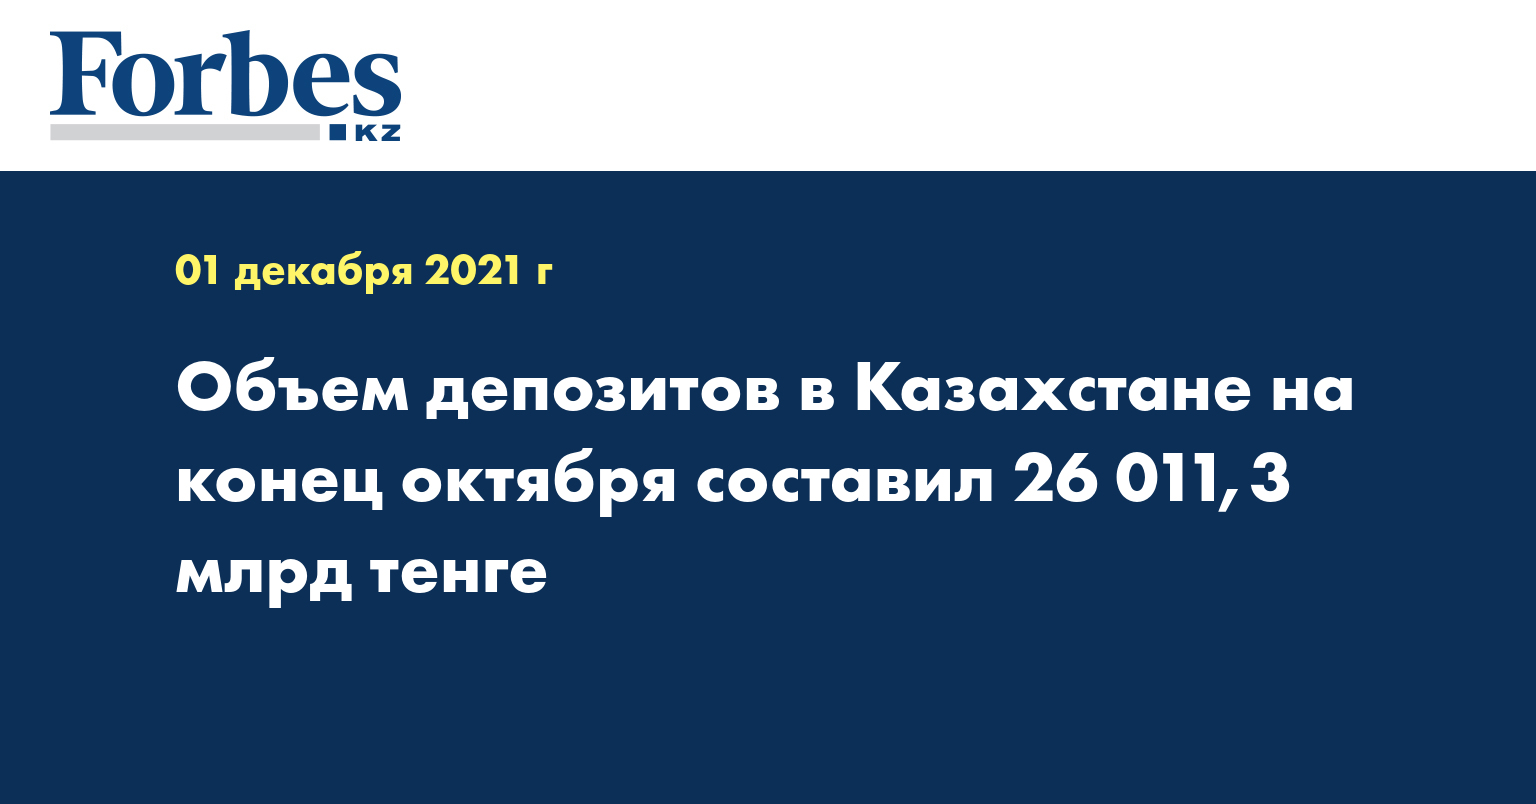 Объем депозитов в Казахстане на конец октября составил 26 011,3 млрд тенге